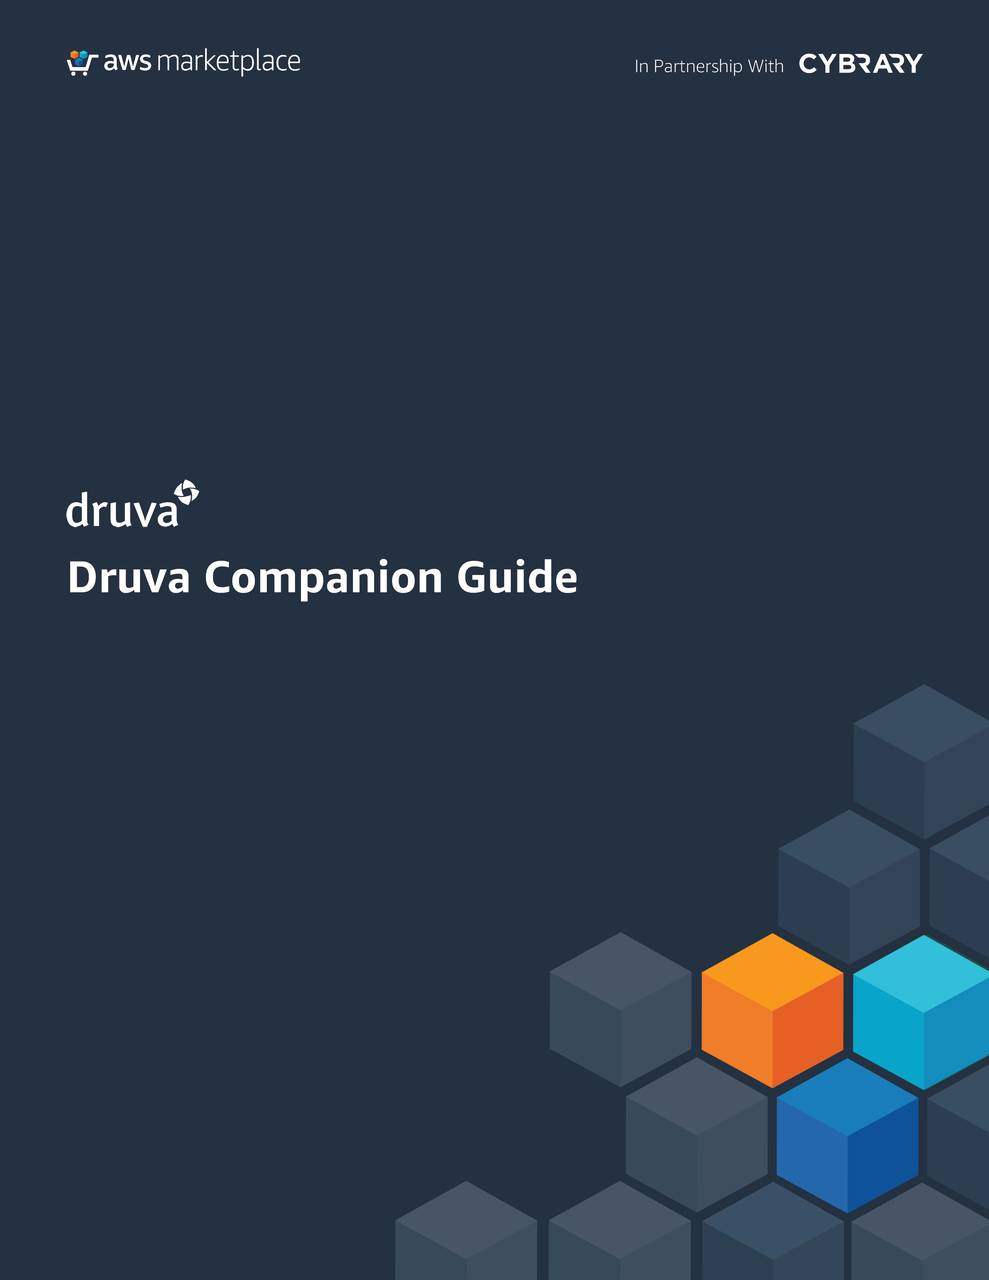 Druva companion guide — Microsoft 365